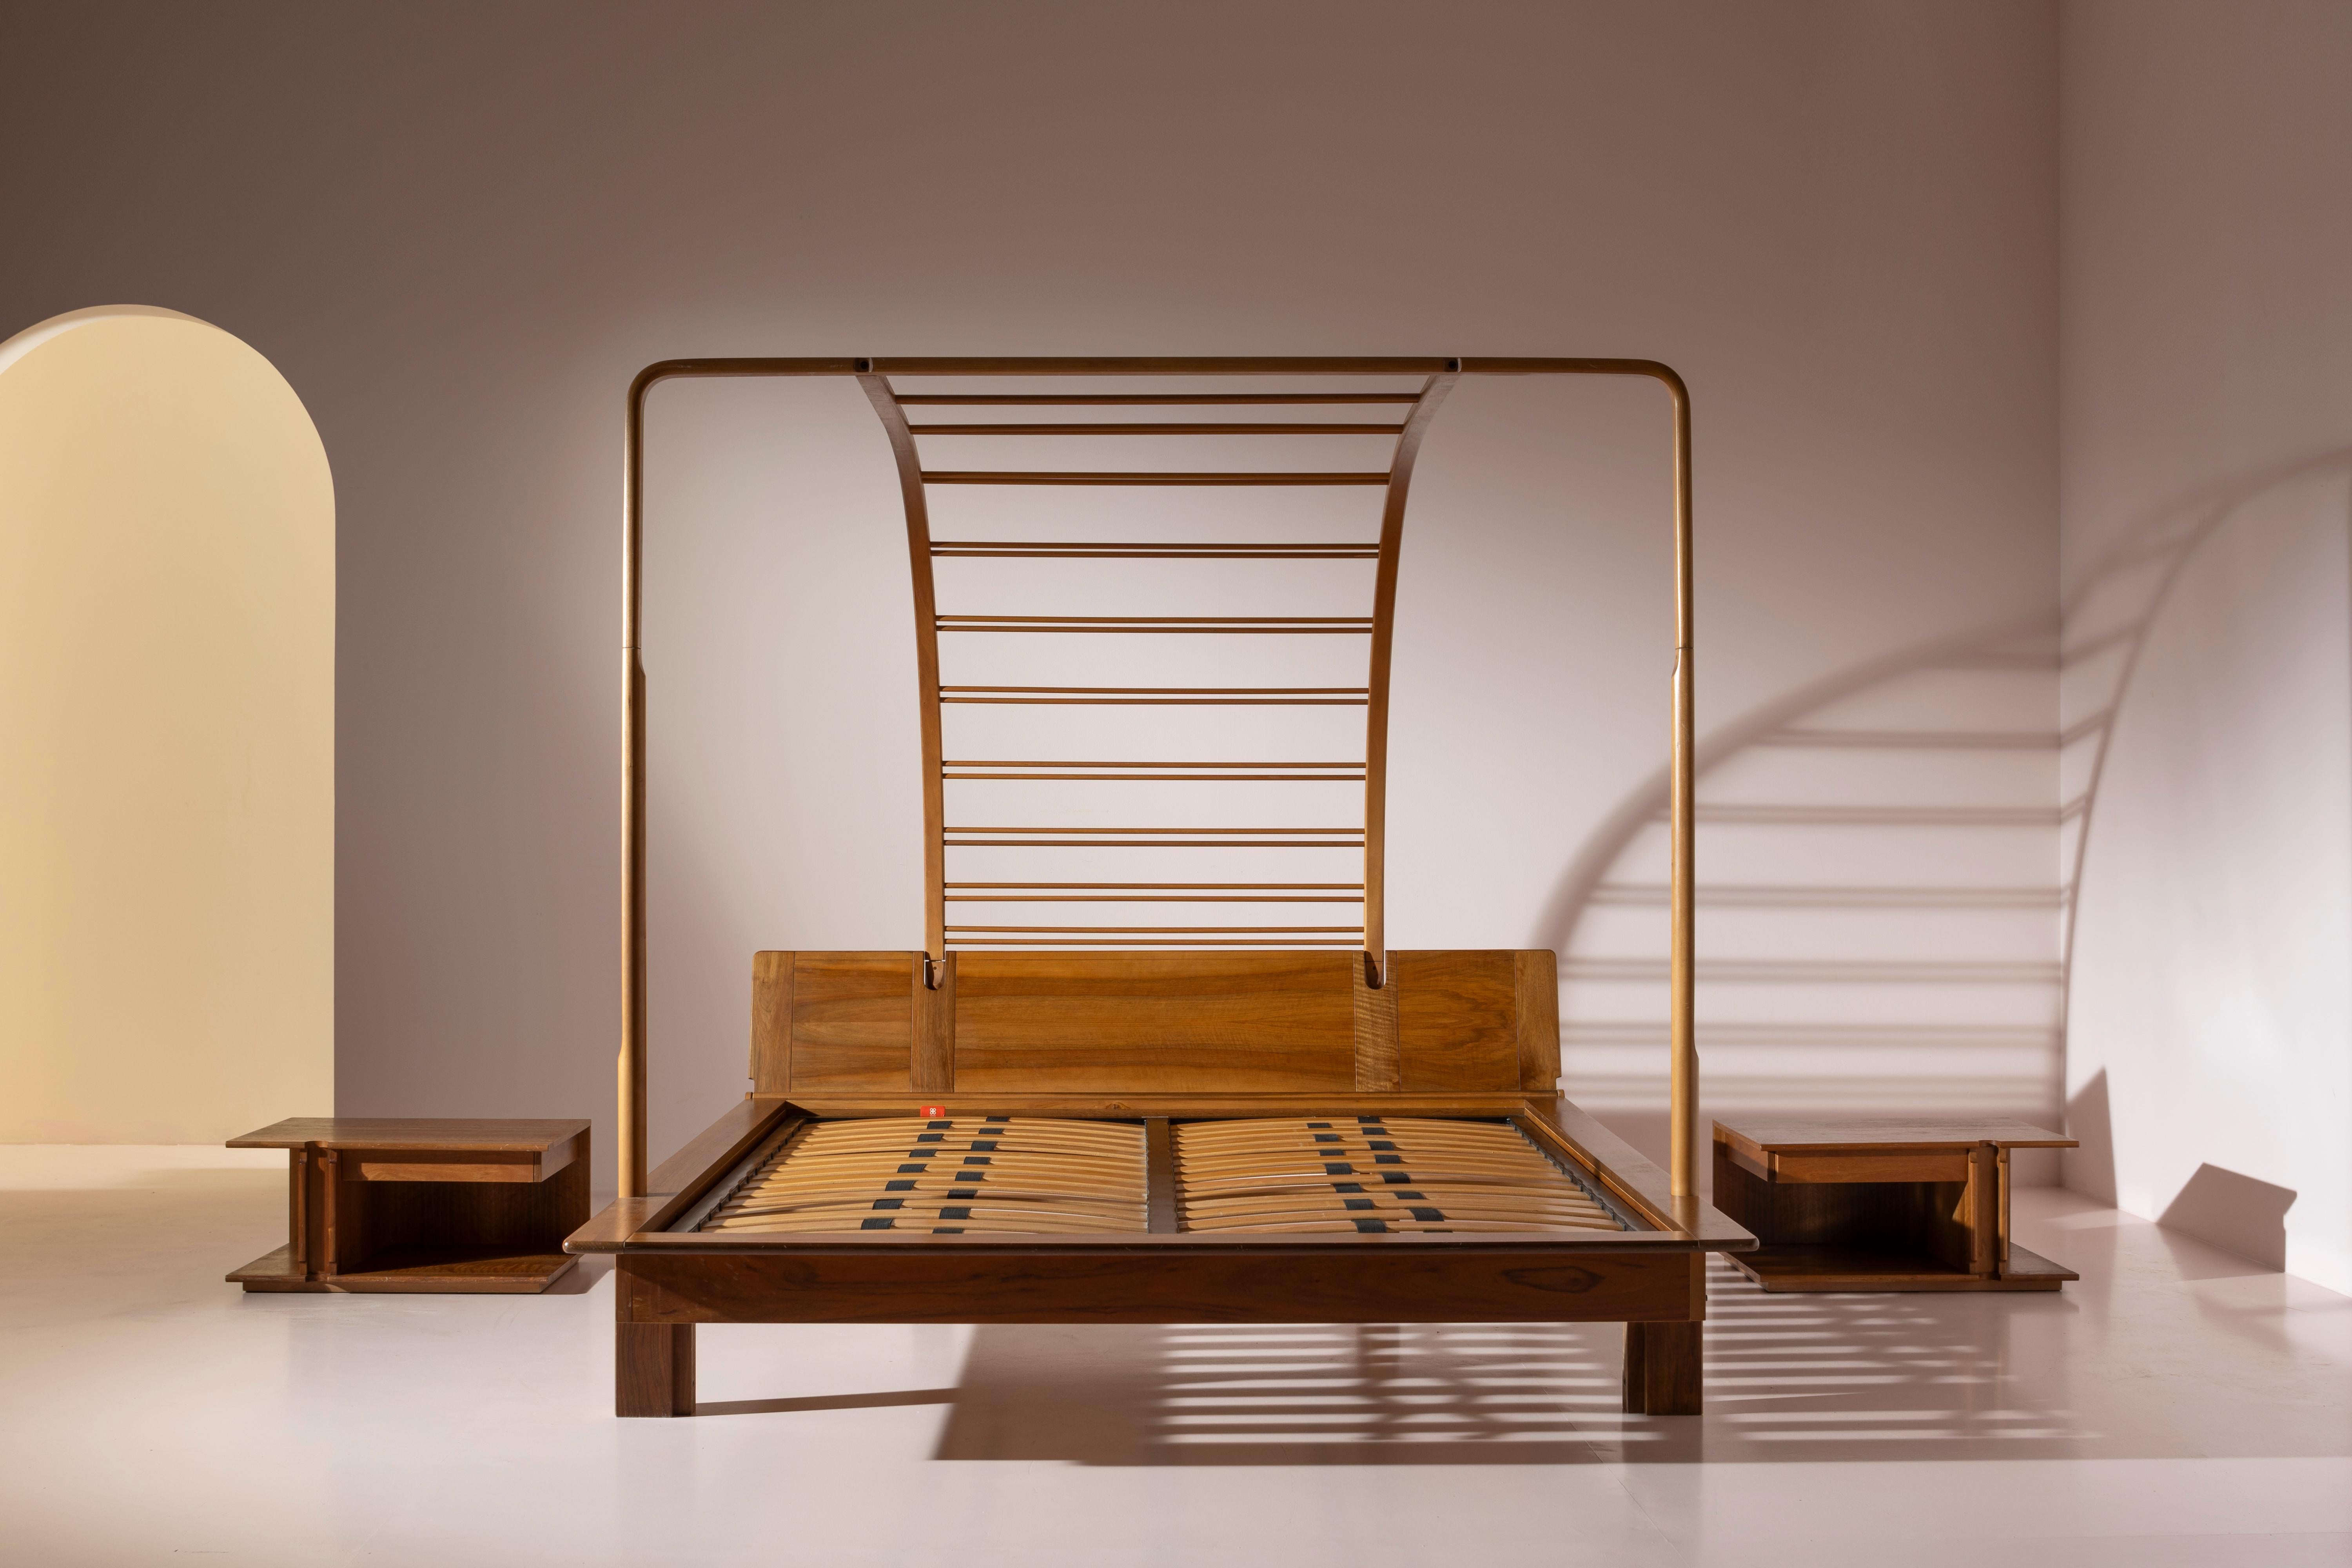 Lit double en bois avec baldaquin et tables de chevet, année 1982, conçu par Franco Poli, modèle Locanda, produit par Bernini.

Les années 80 du vingtième siècle ont été des années de recherche constante d'un équilibre entre tradition et innovation.